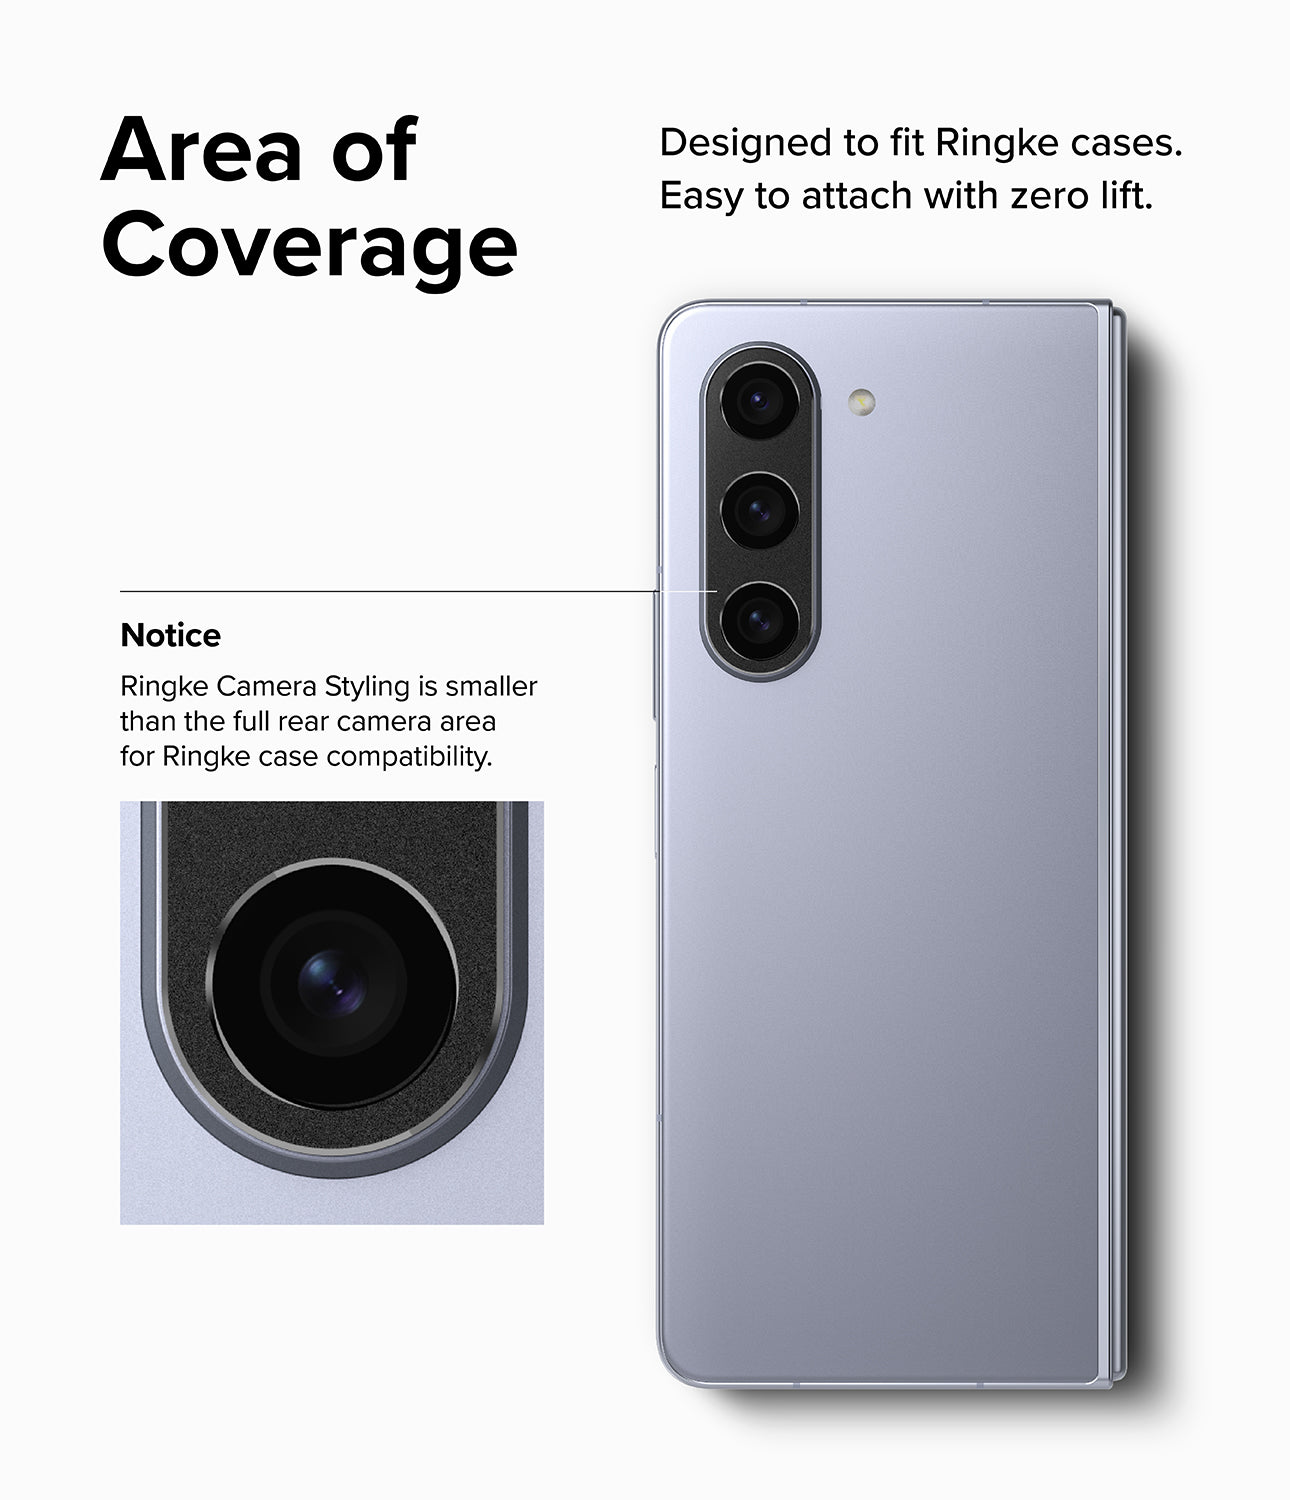 Galaxy Z Fold 5 | Camera Styling